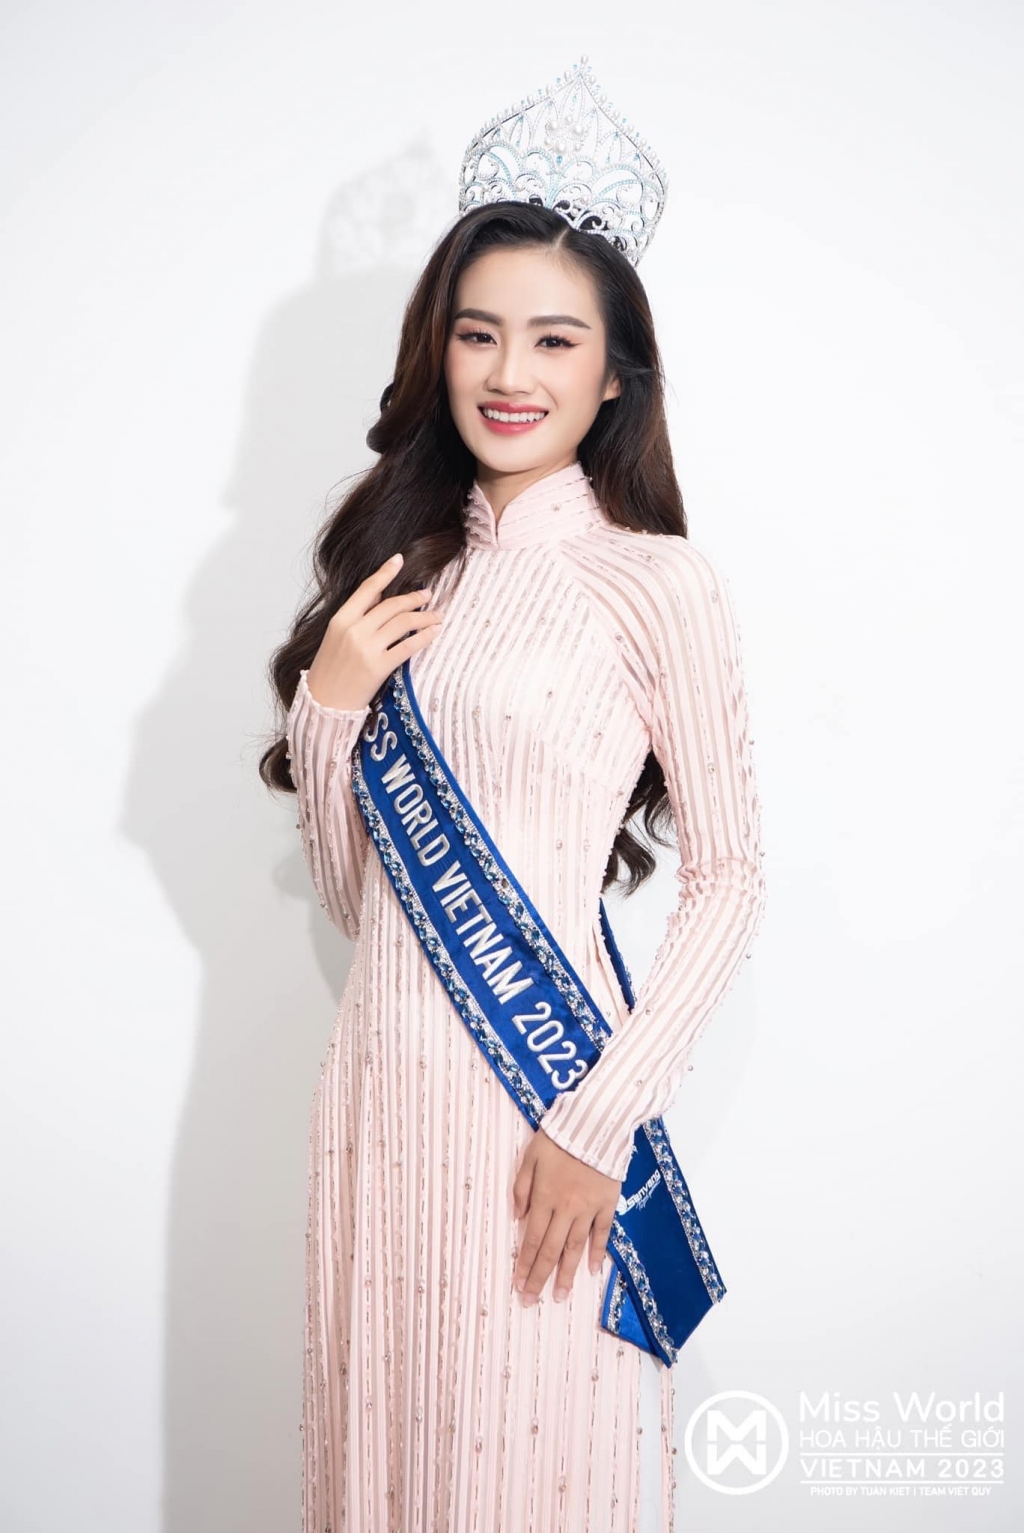 Trước làn sóng đòi tước vương miện Hoa hậu Ý Nhi từ cộng đồng anti-fan, Trưởng BTC Miss World Vietnam 2023 hai lần xin lỗi khán giả